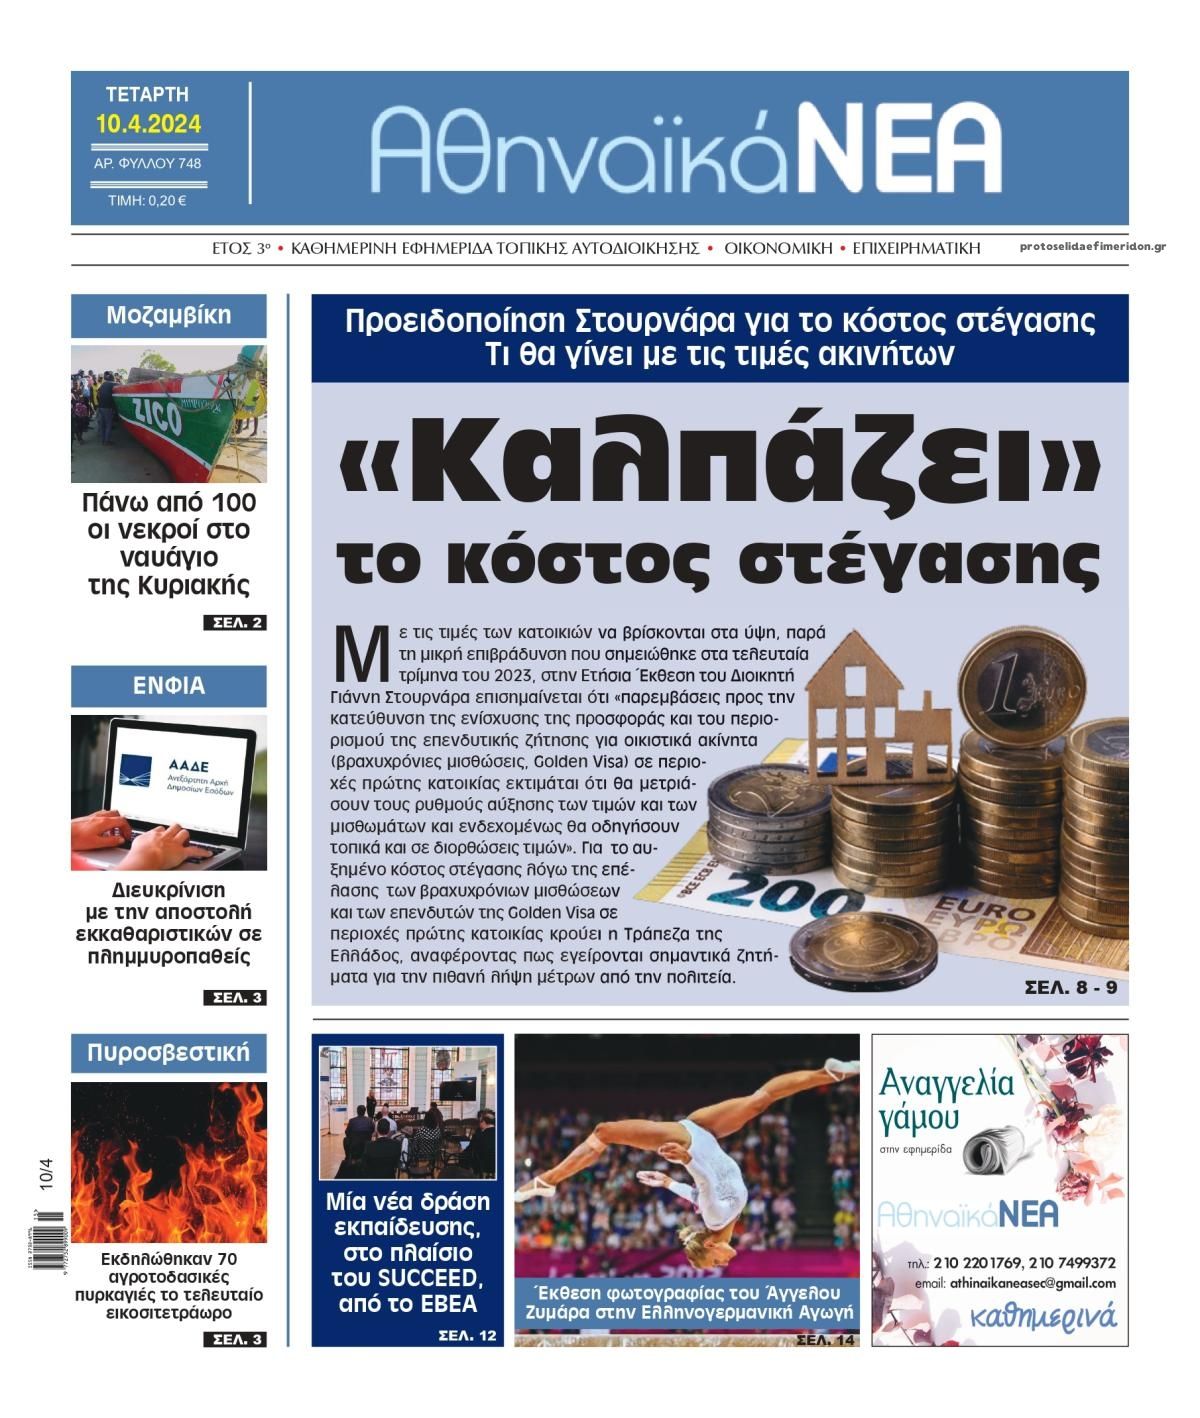 Πρωτοσέλιδο εφημερίδας Αθηναϊκά Νέα